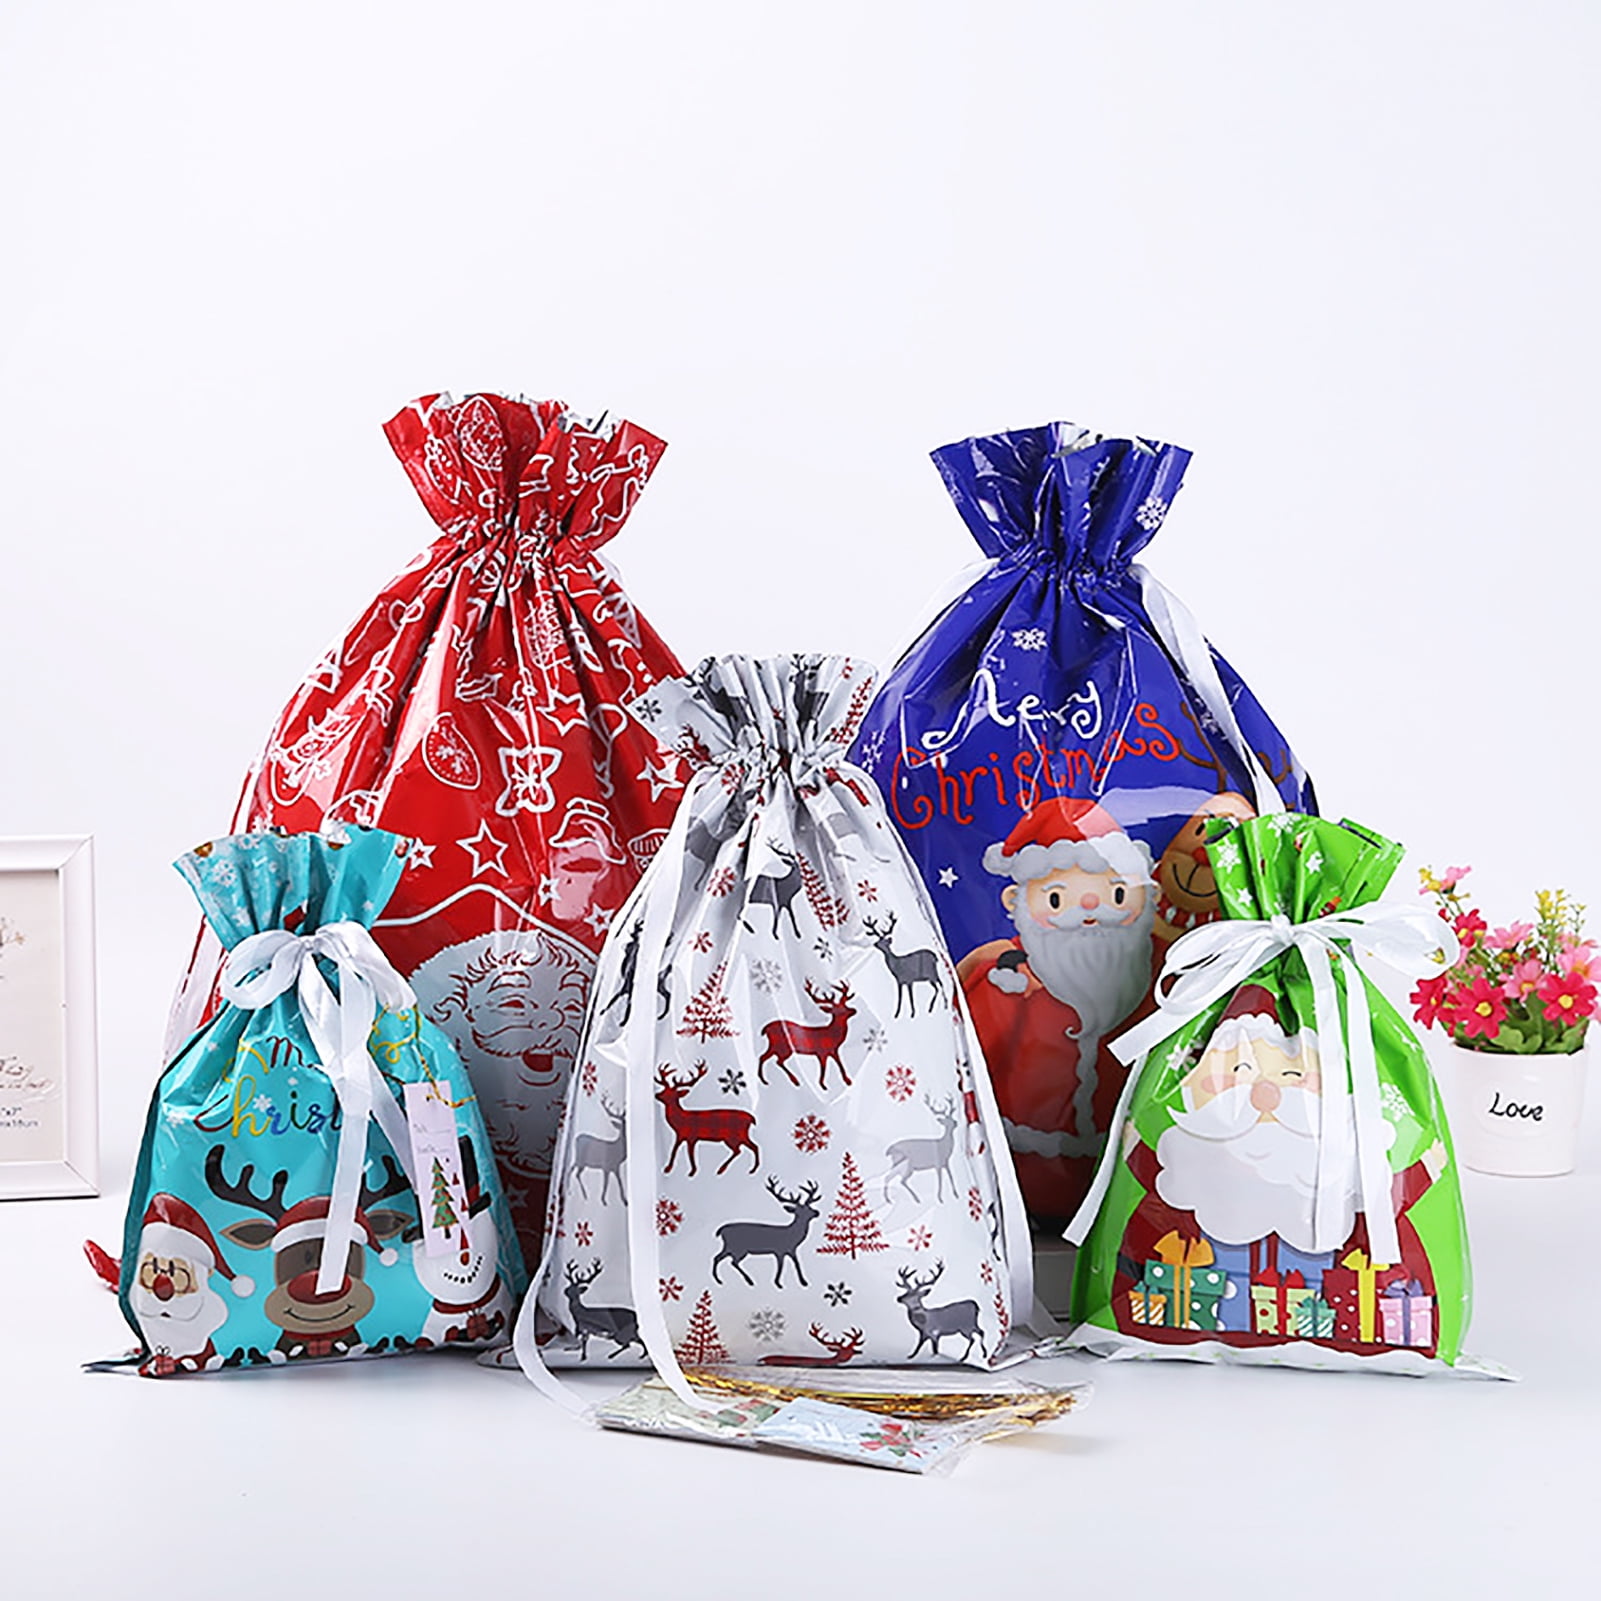 Erimova  Christmas gift bags 12 pcs  15 gift cards Reusable Drawstring  Gift bags Fabric Gift